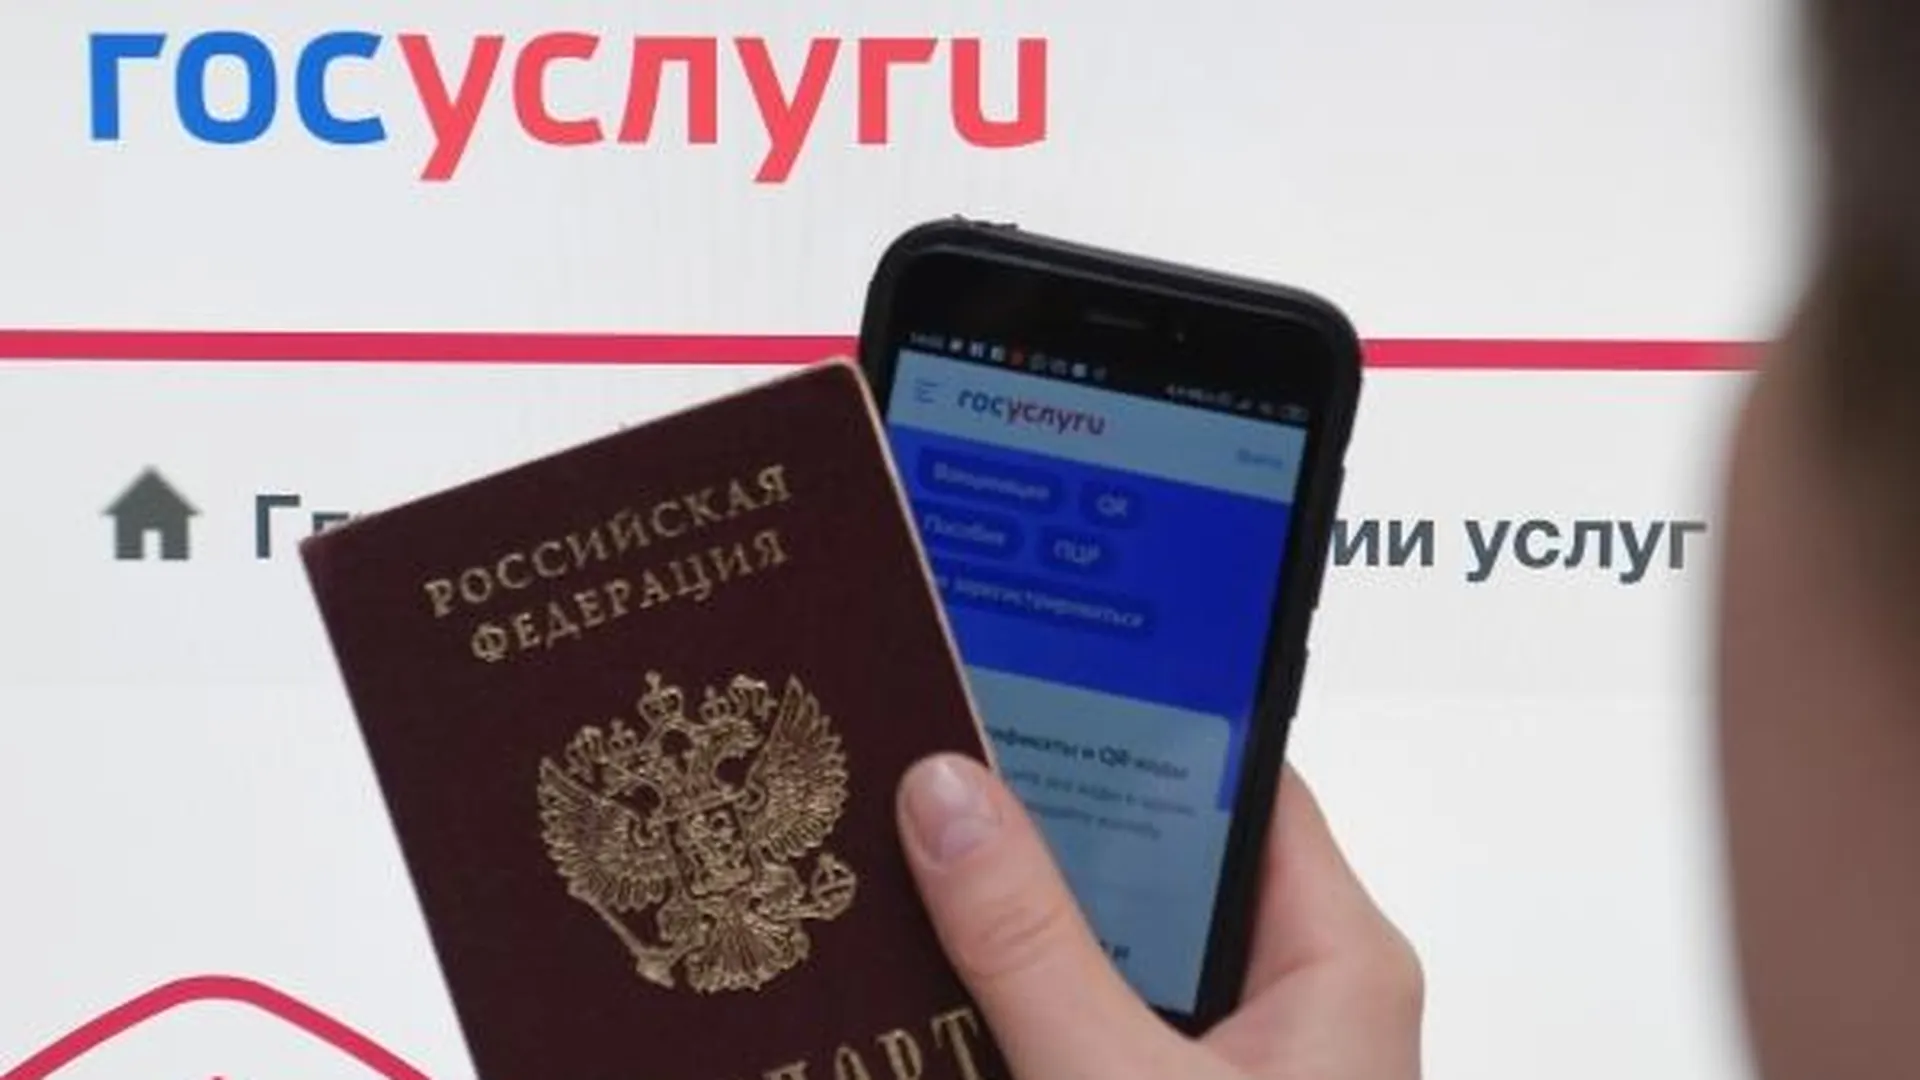 Специалист по кибербезопасности рассказал о способах использования Госуслуг вместо паспорта